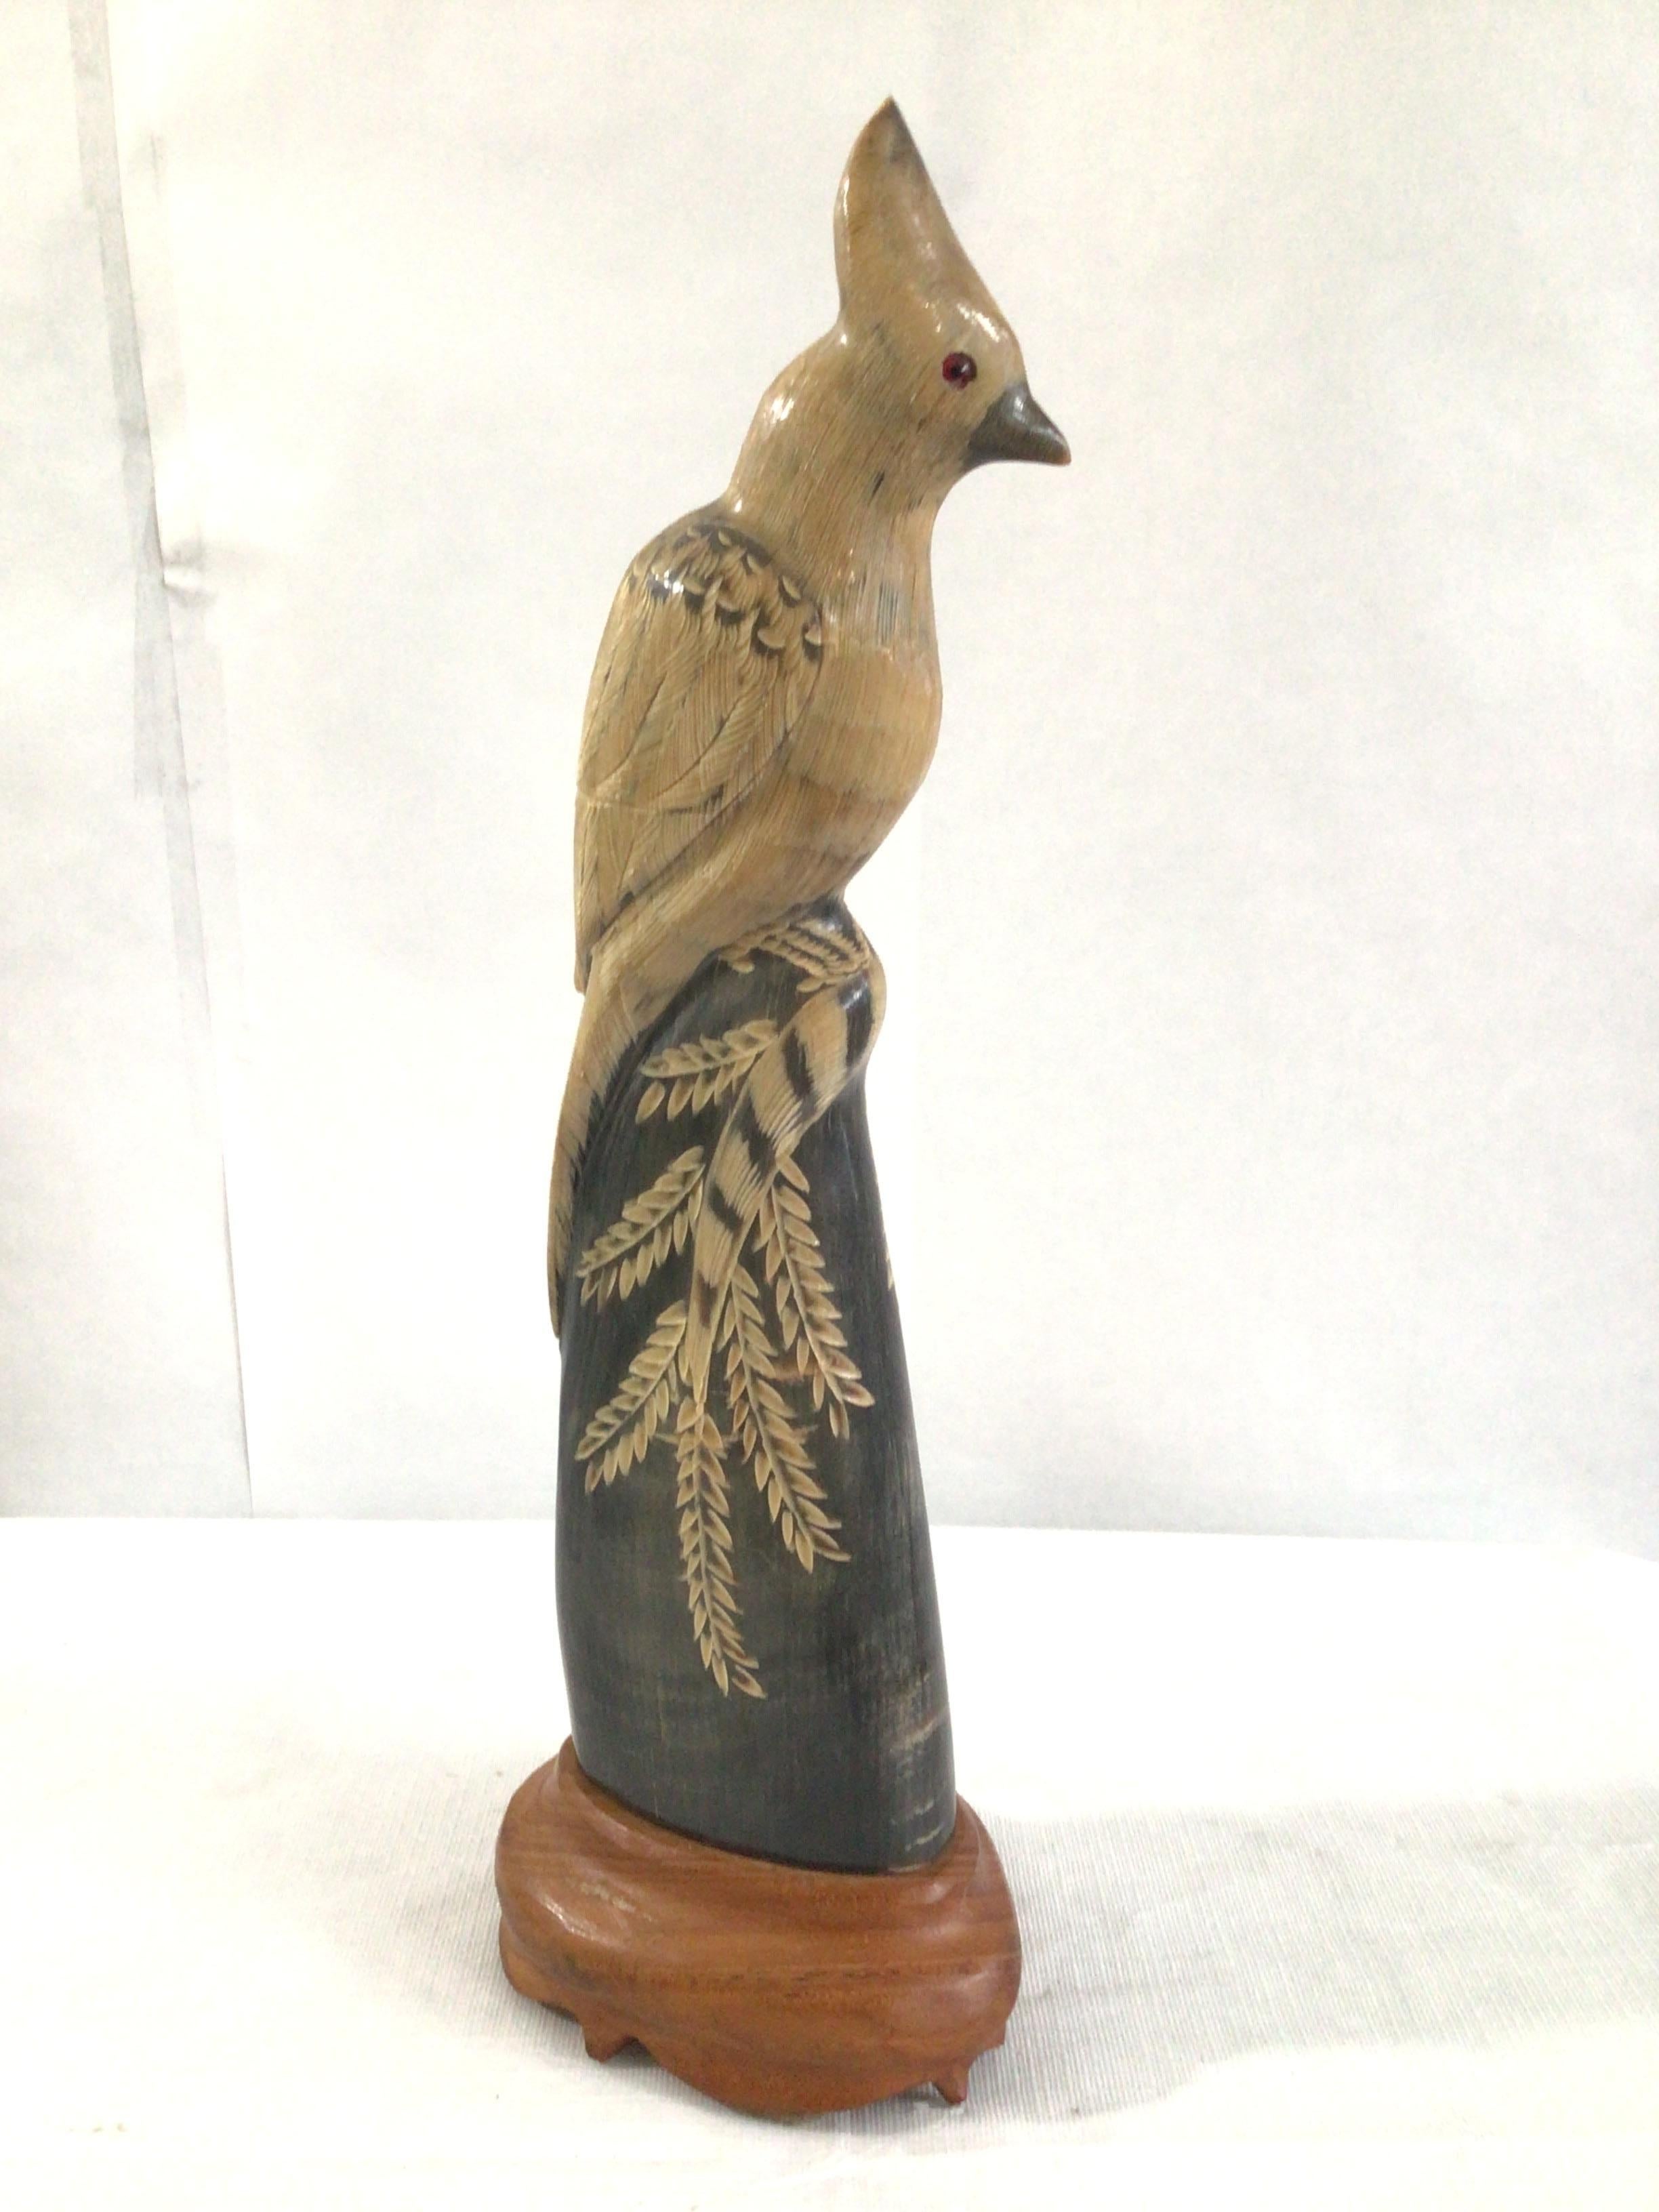 1940s Vintage geschnitzt Wasserbüffel Horn 
Handgeschnitzte und detaillierte Skulptur eines Papageis / Vogels auf einem Holzsockel
Farben: Schwarz, Tan, Naturholz